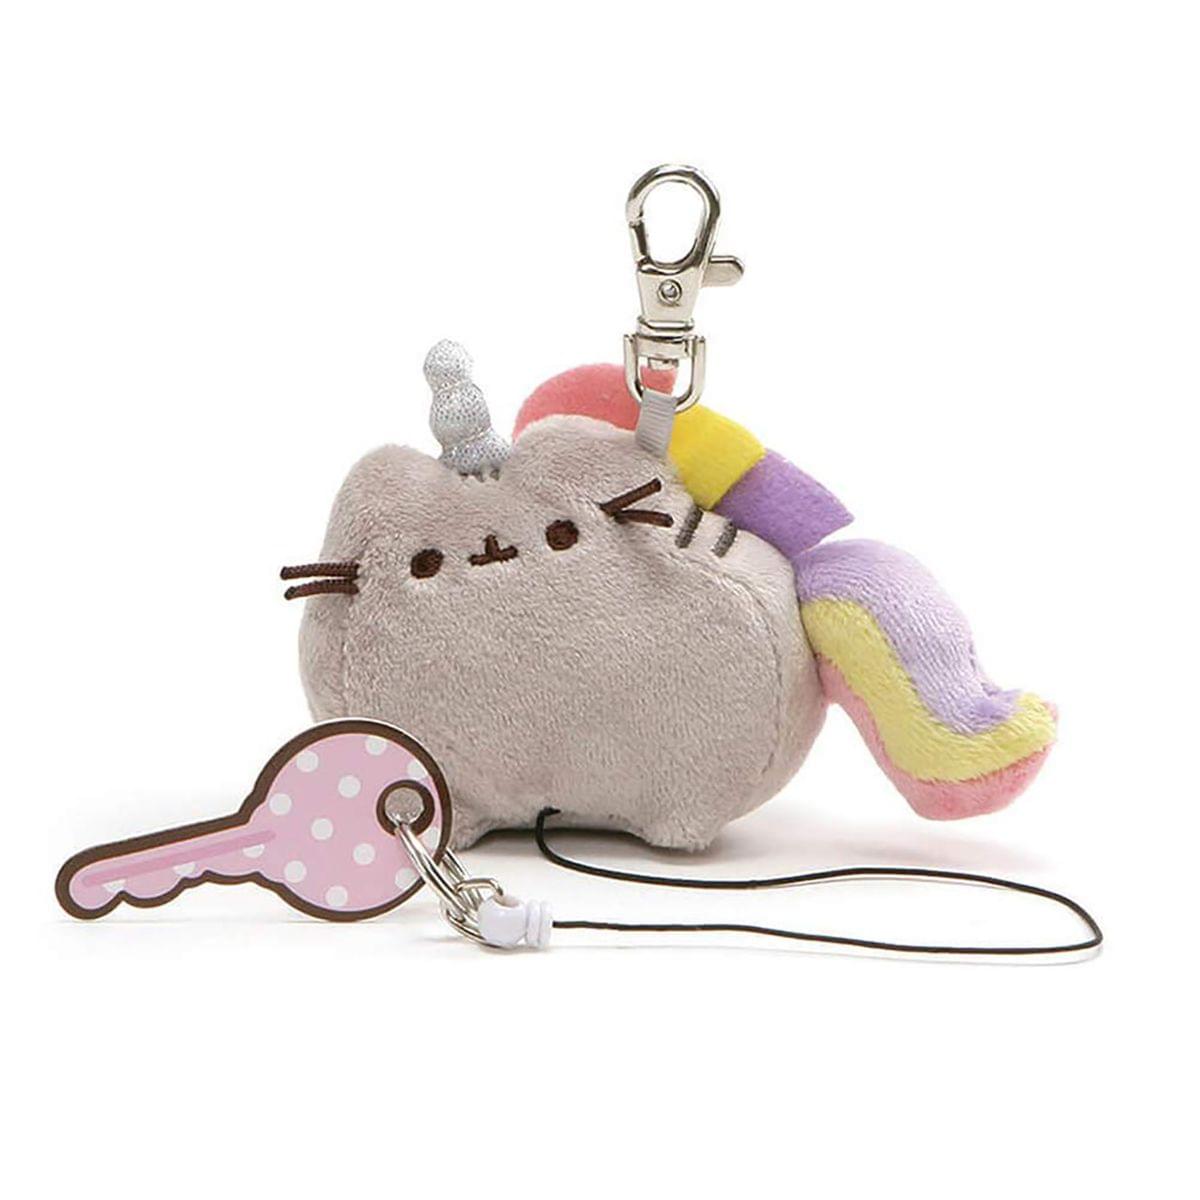 Pusheen Pusheenicorn Unicorn Cat 3-Inch Plush Retractable Keychain